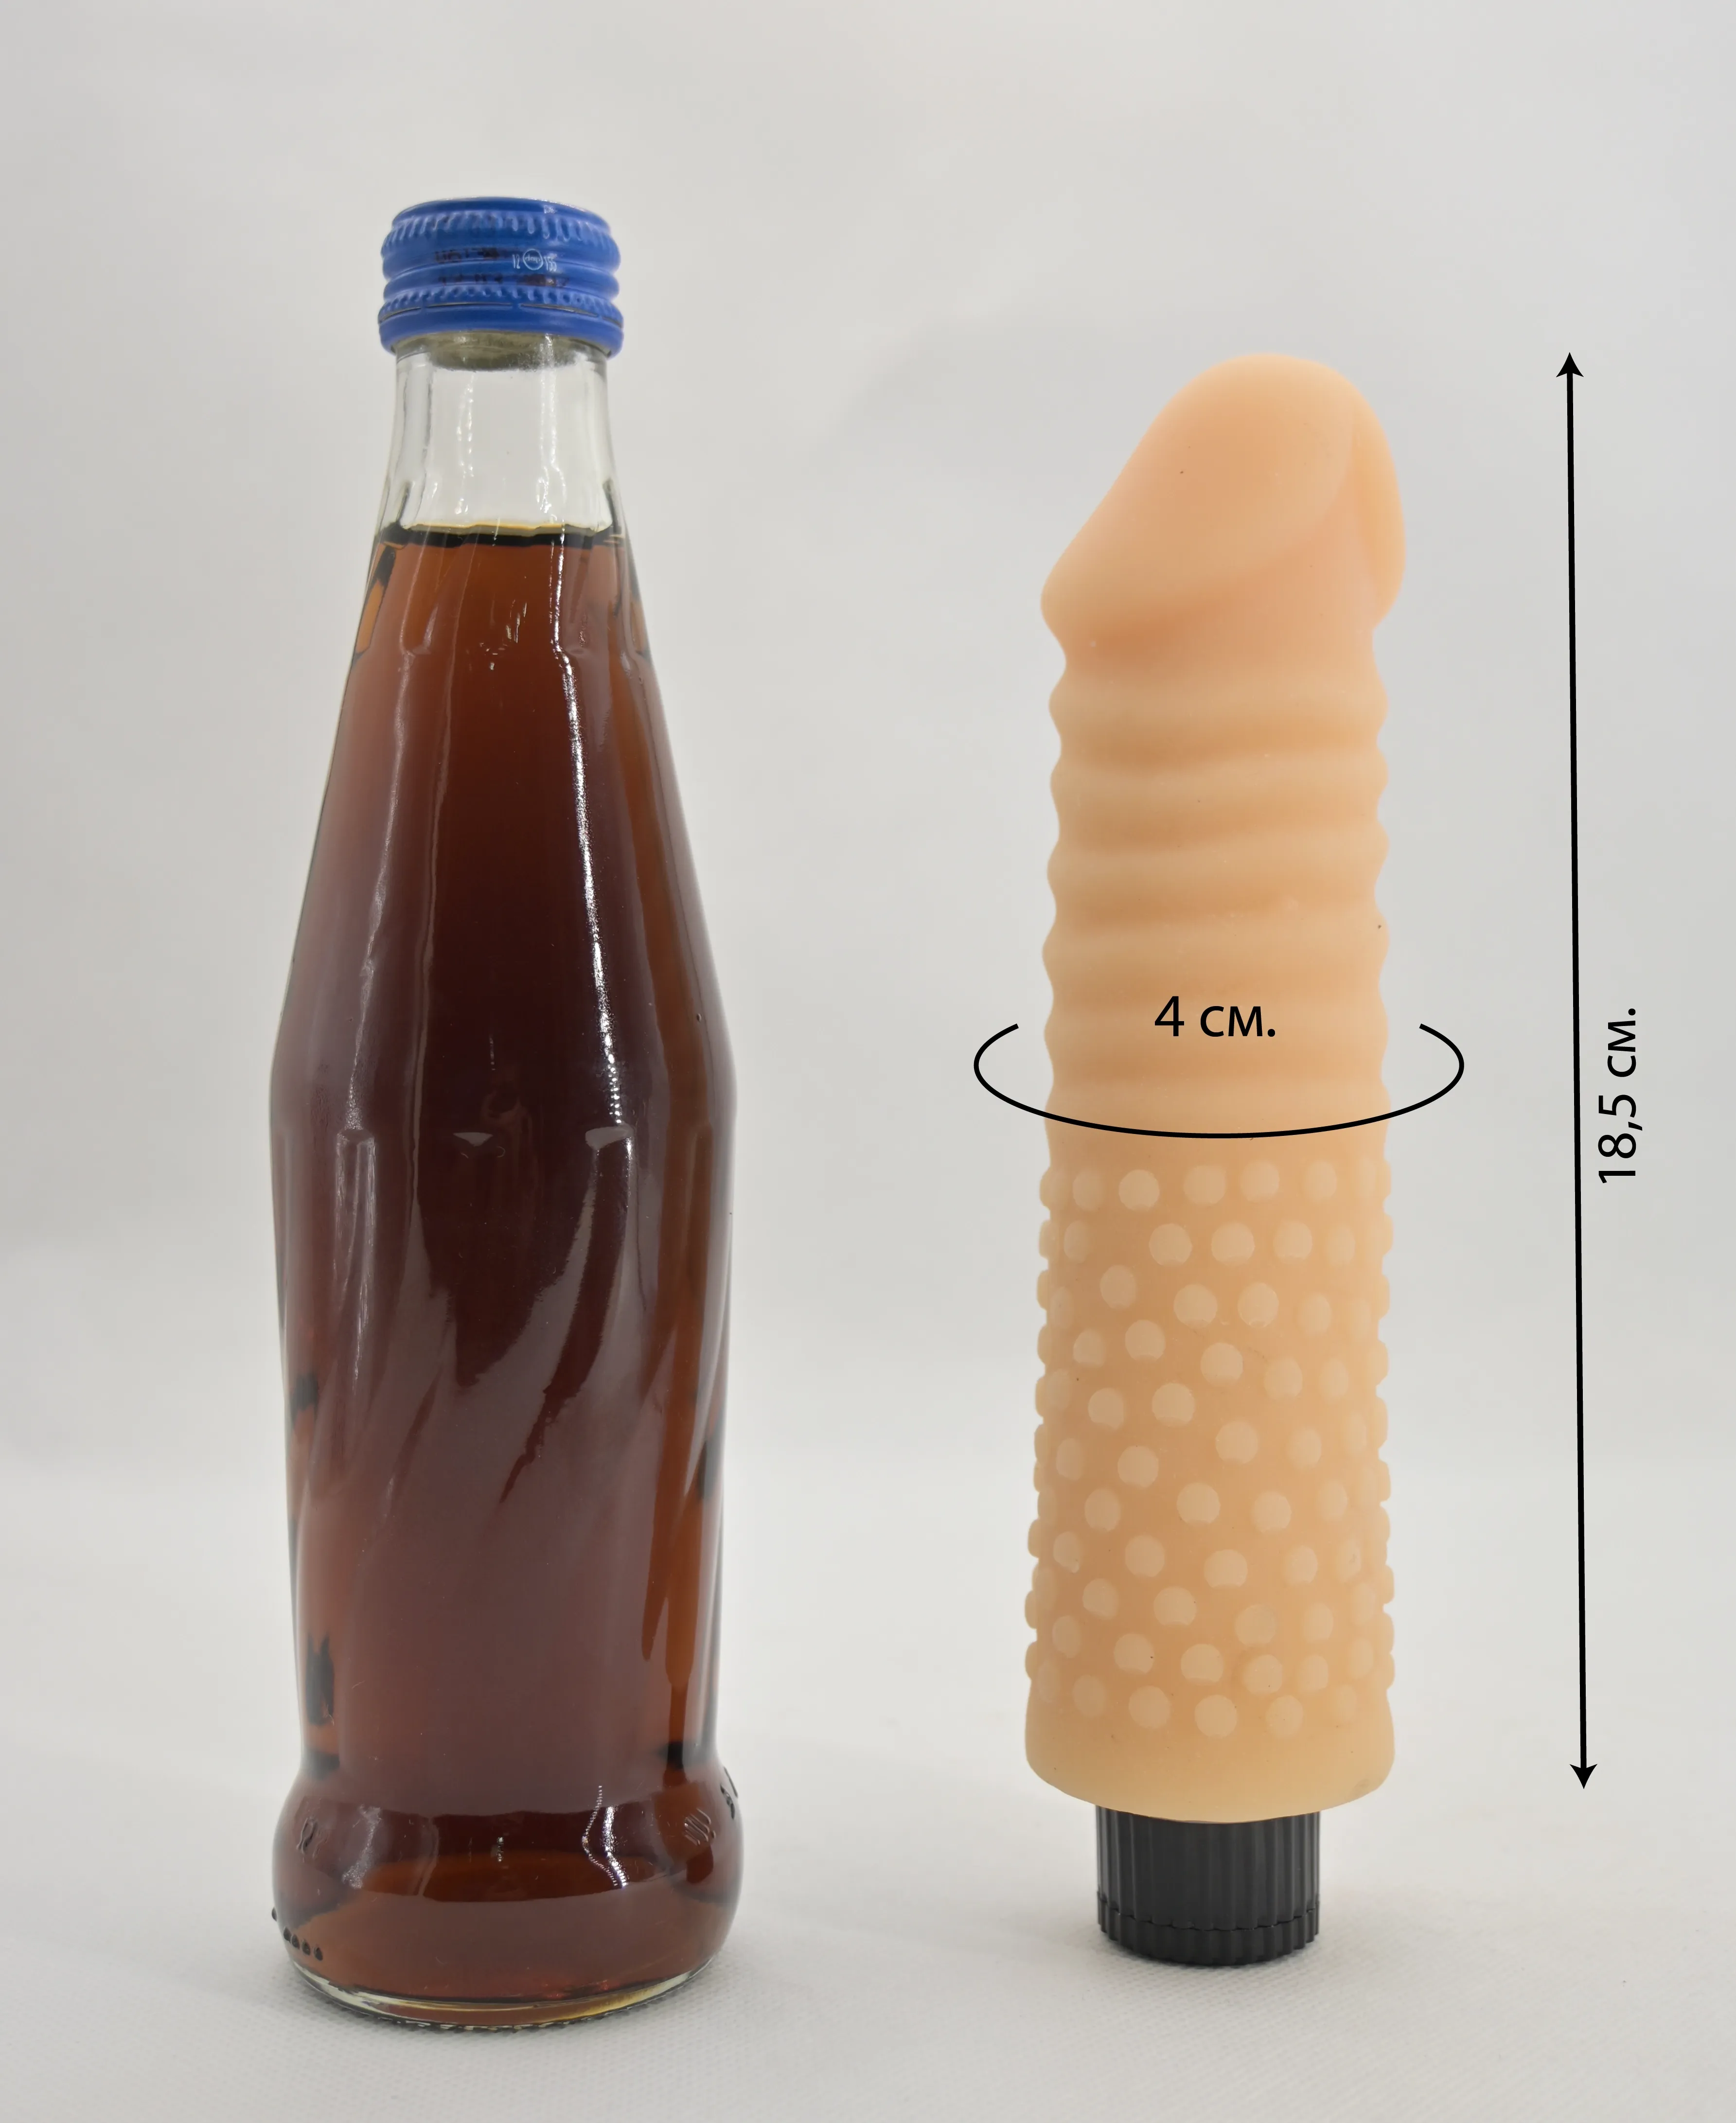 Размеры Real Touch XXX #5 и сравнение вибратора со стеклянной бутылкой 0,33